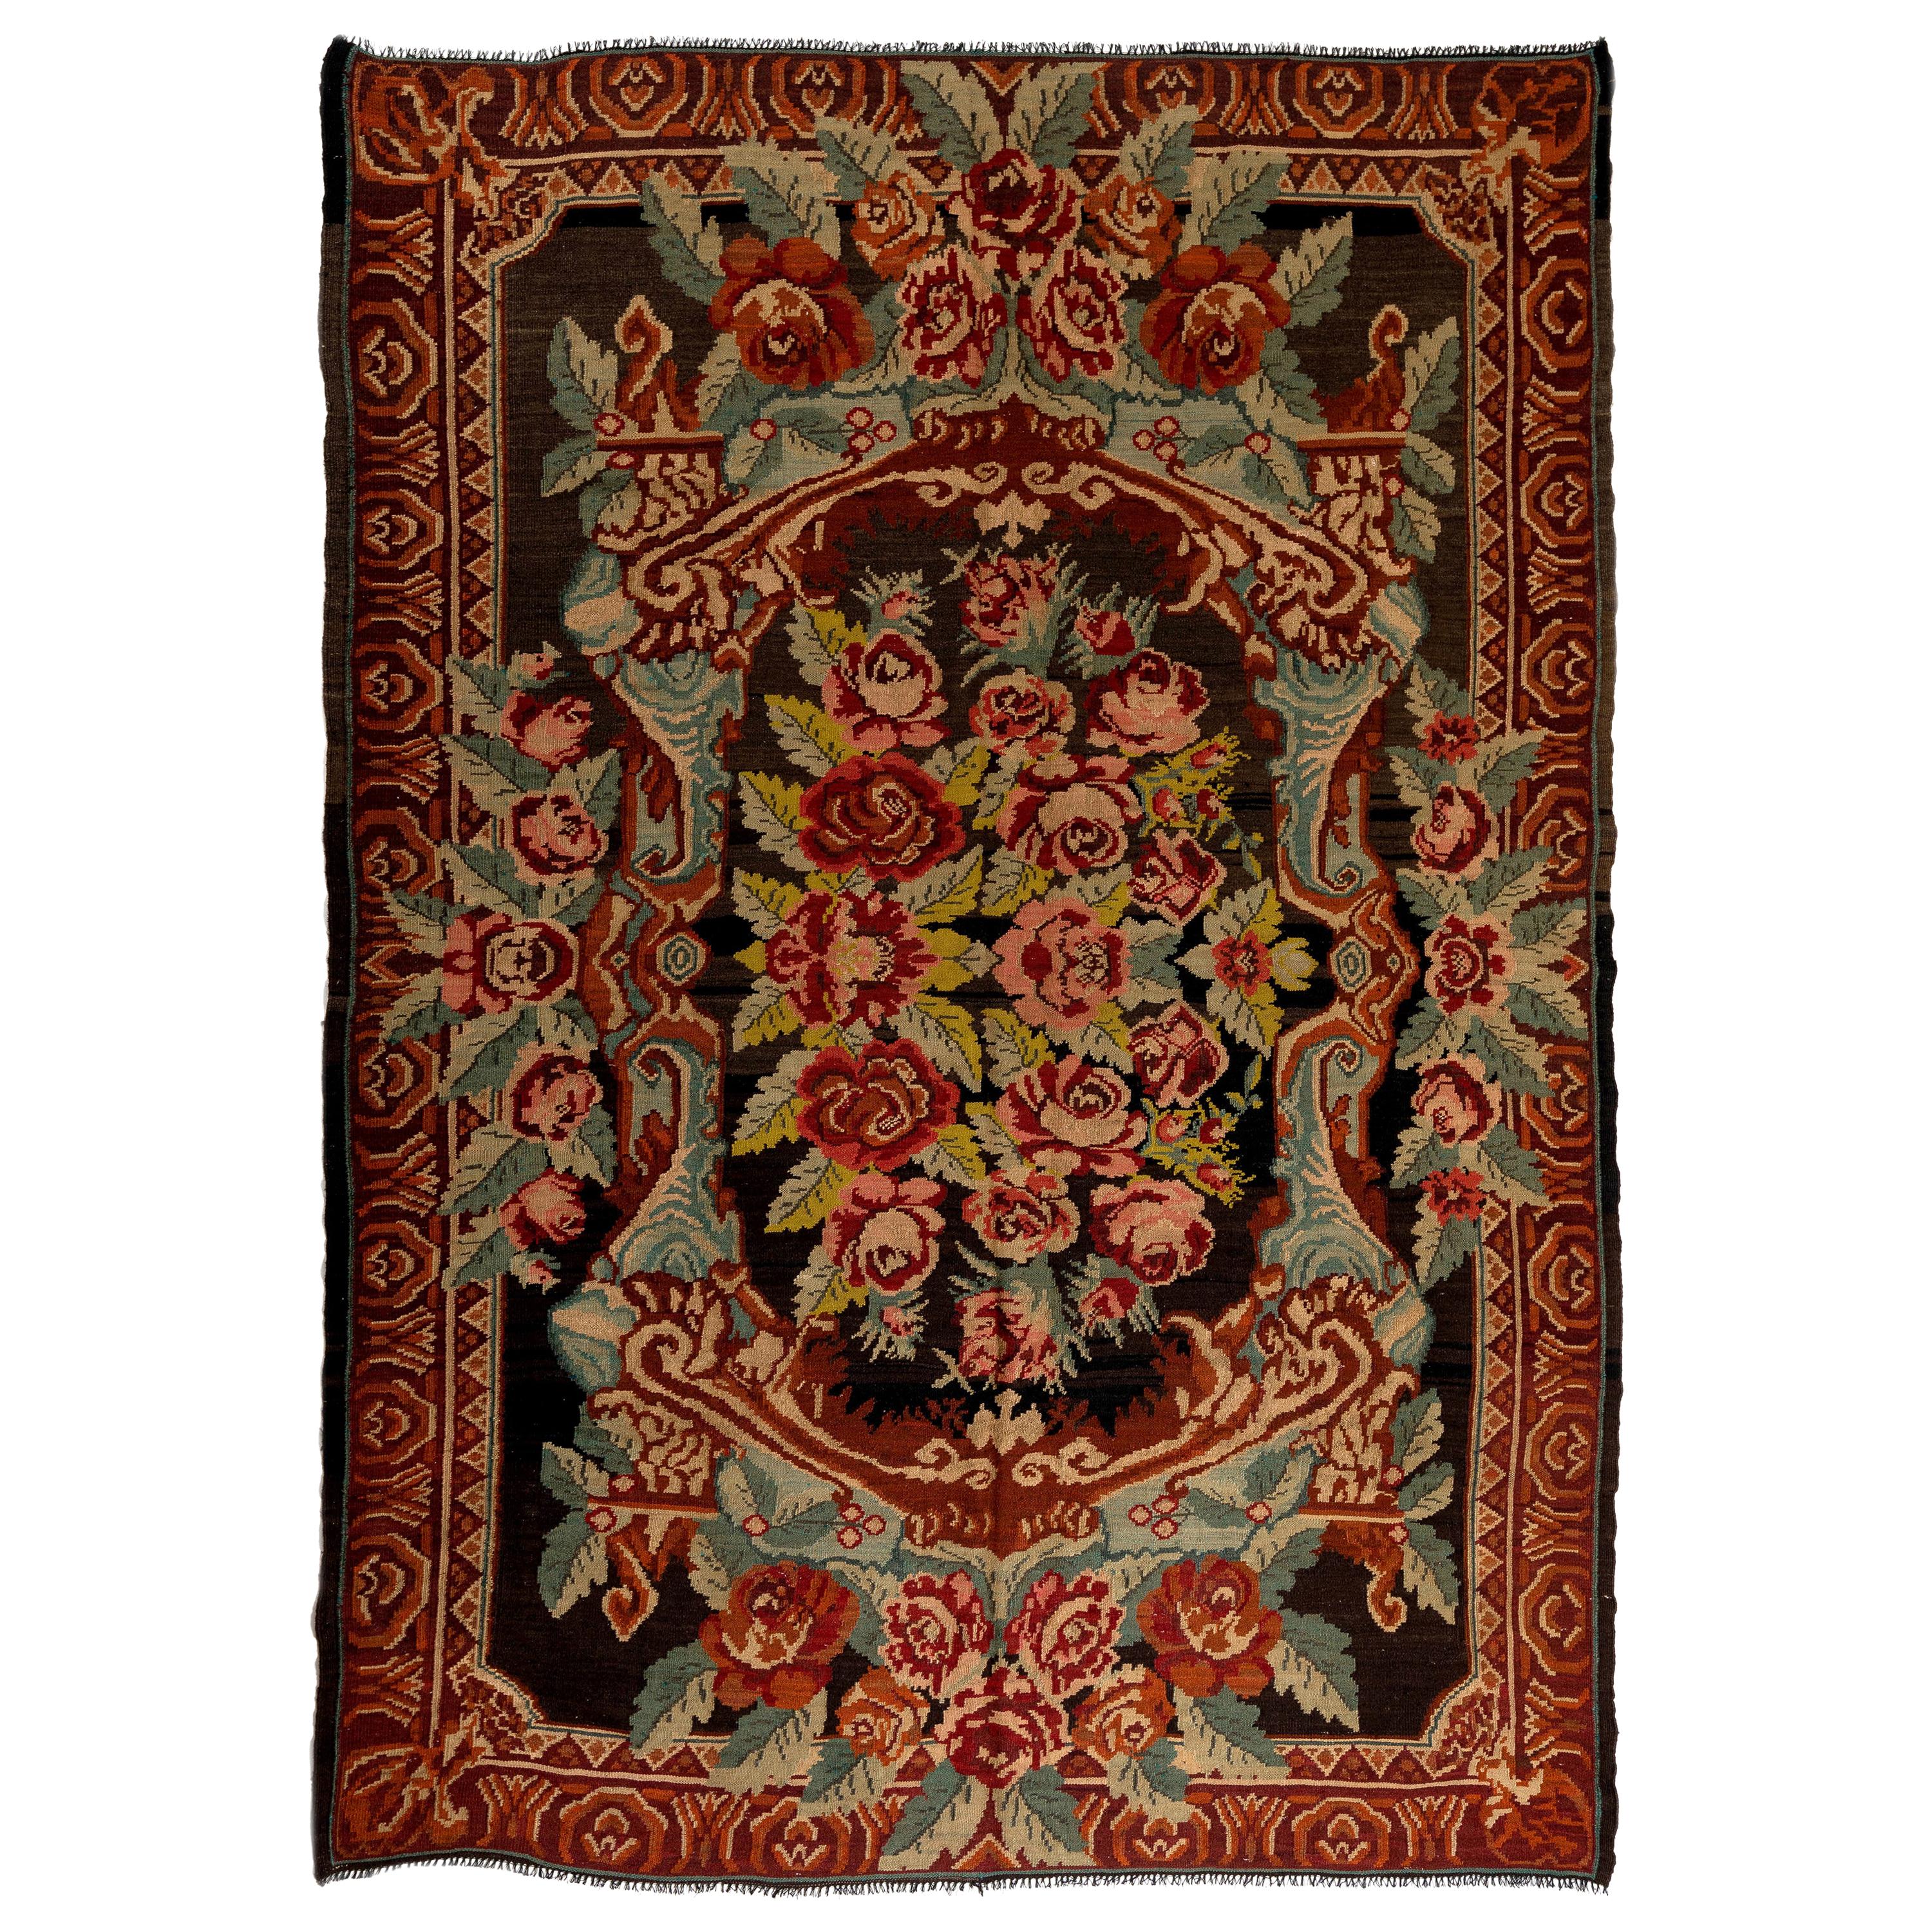 7,5x10.4 Ft Bessarabischer Kelim-Teppich aus dem späten 20. Jahrhundert, handgewebt mit Blumenmuster